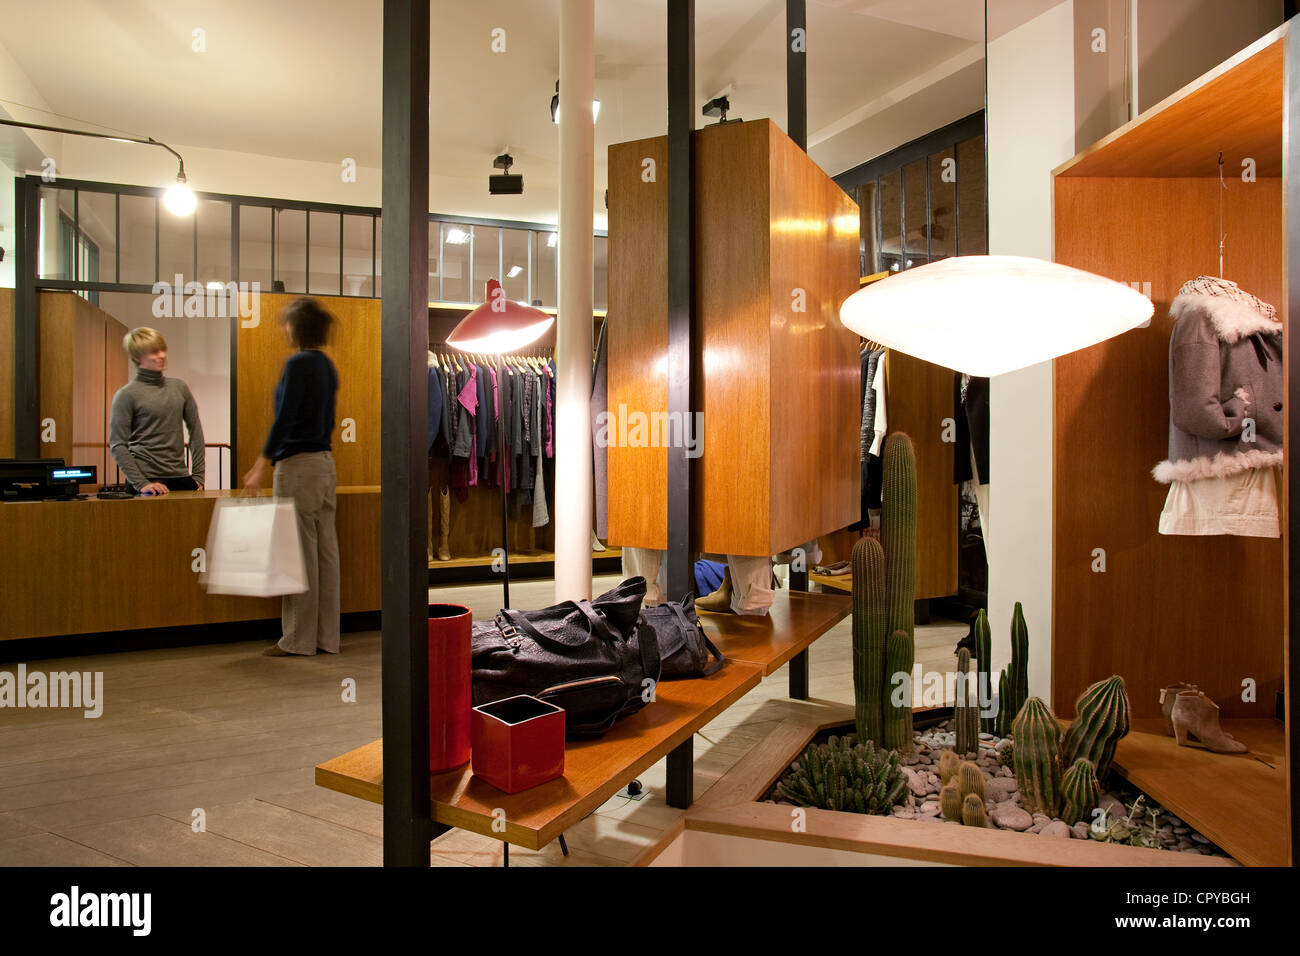 France, Paris, Le Marais District, Isabel Marant fashion store Stock Photo  - Alamy